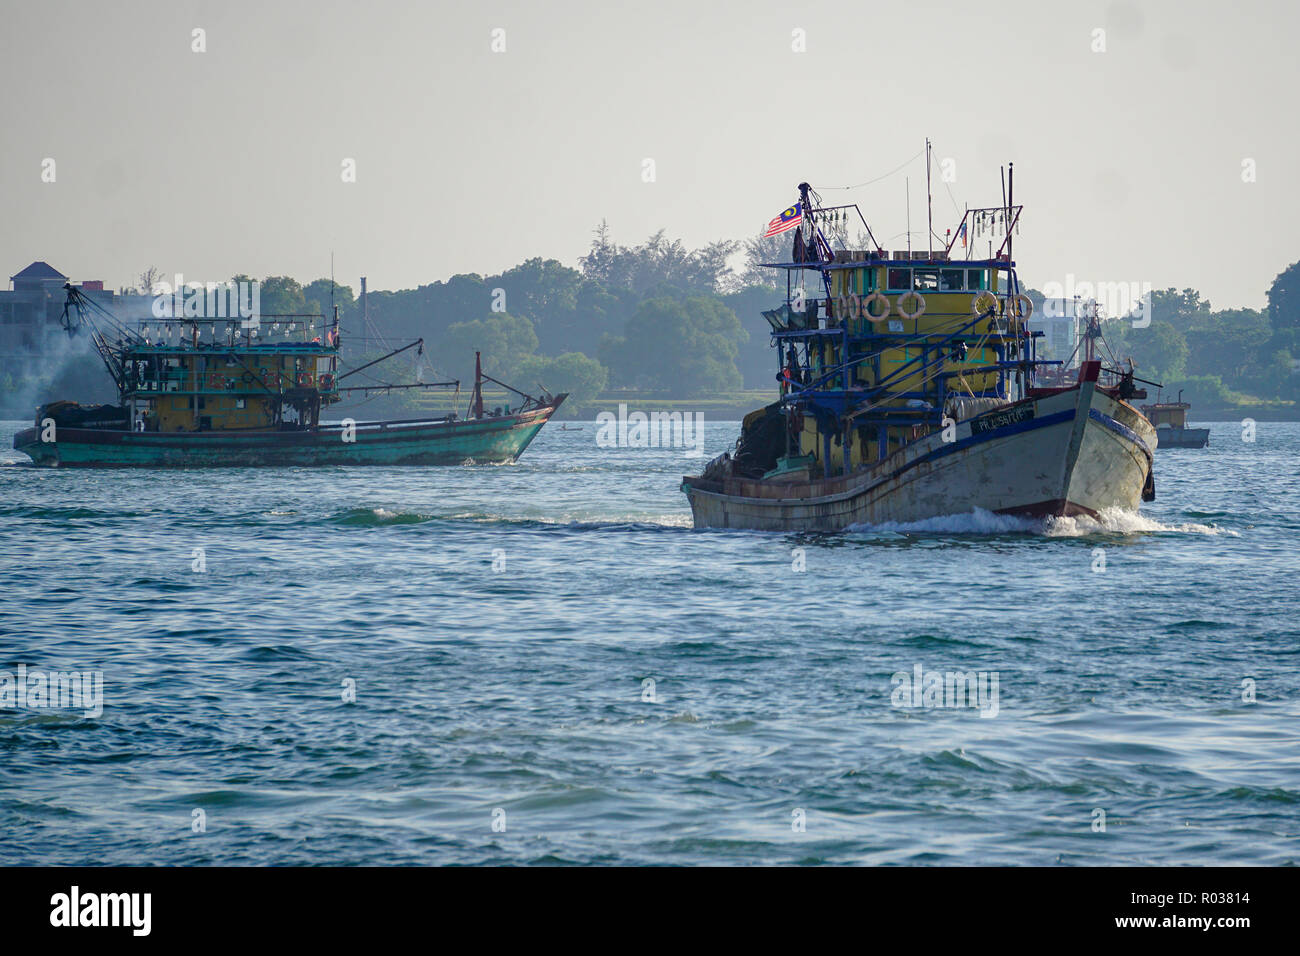 Kota Kinabalu Sabah Malaysia - Aug 15, 2018 : Fishing vessel seen at Kota Kinabalu seafront on Apr 13, 2017. Stock Photo